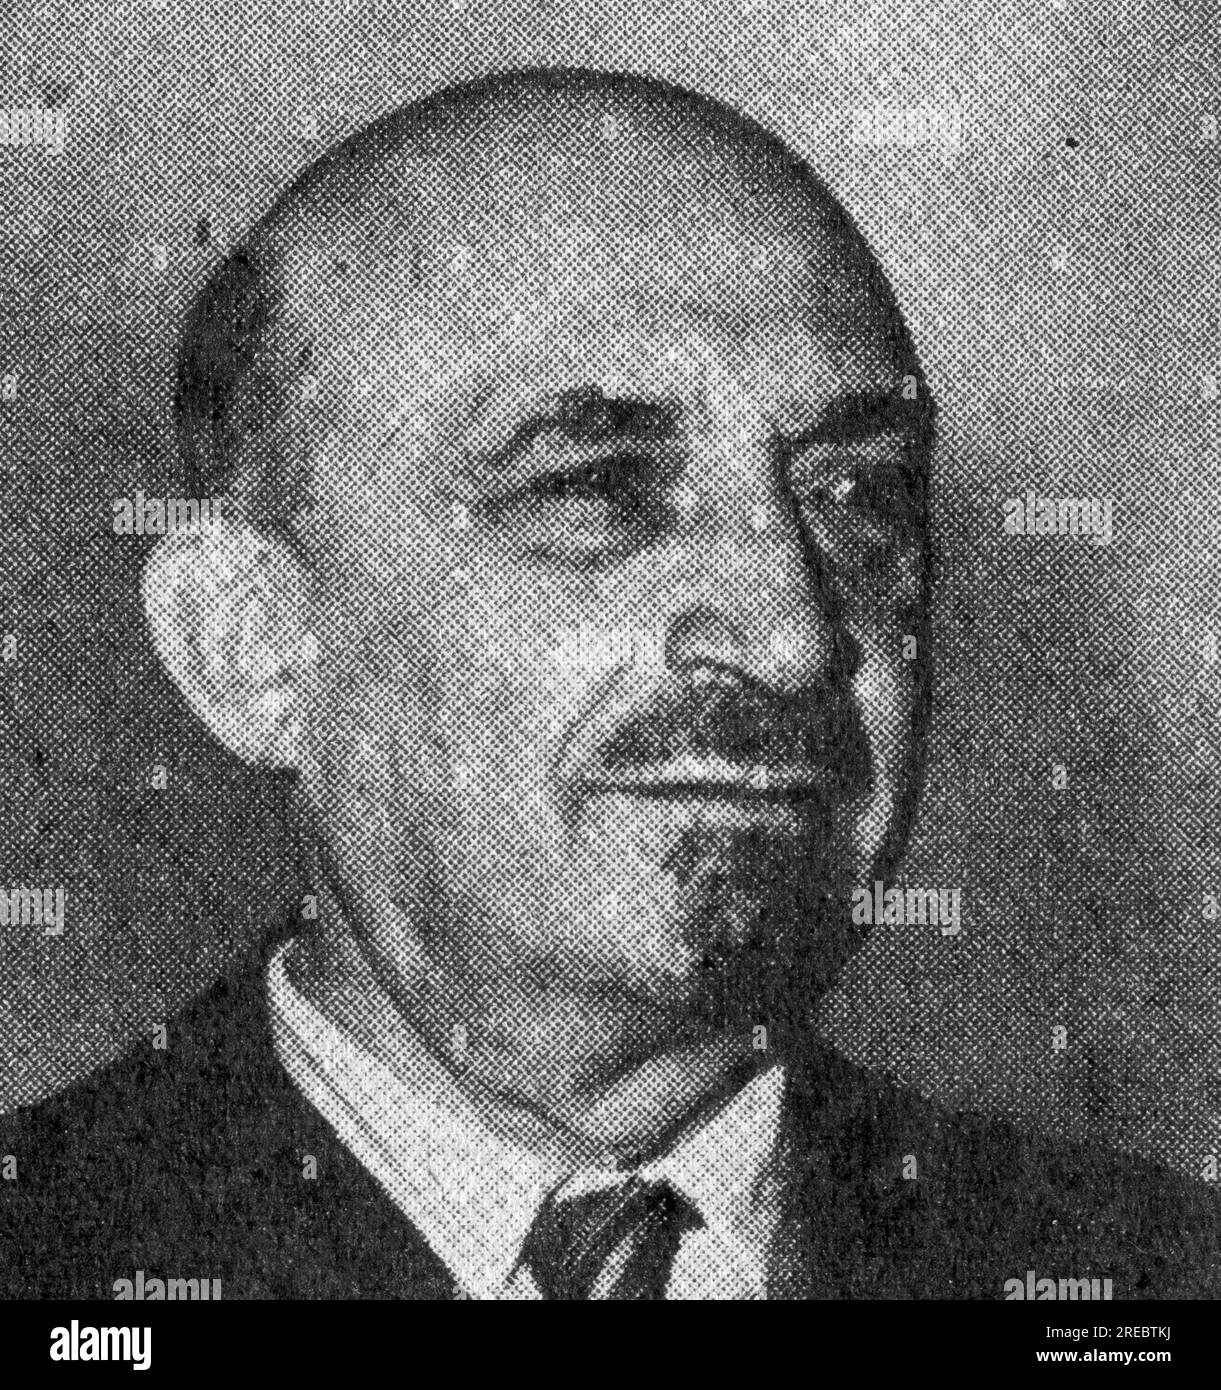 Weizmann, Chaim, 27.11.1874 - 9.11.1952, politicien israélien, années 1930, INFORMATIONS-AUTORISATION-DROITS-SUPPLÉMENTAIRES-NON-DISPONIBLES Banque D'Images